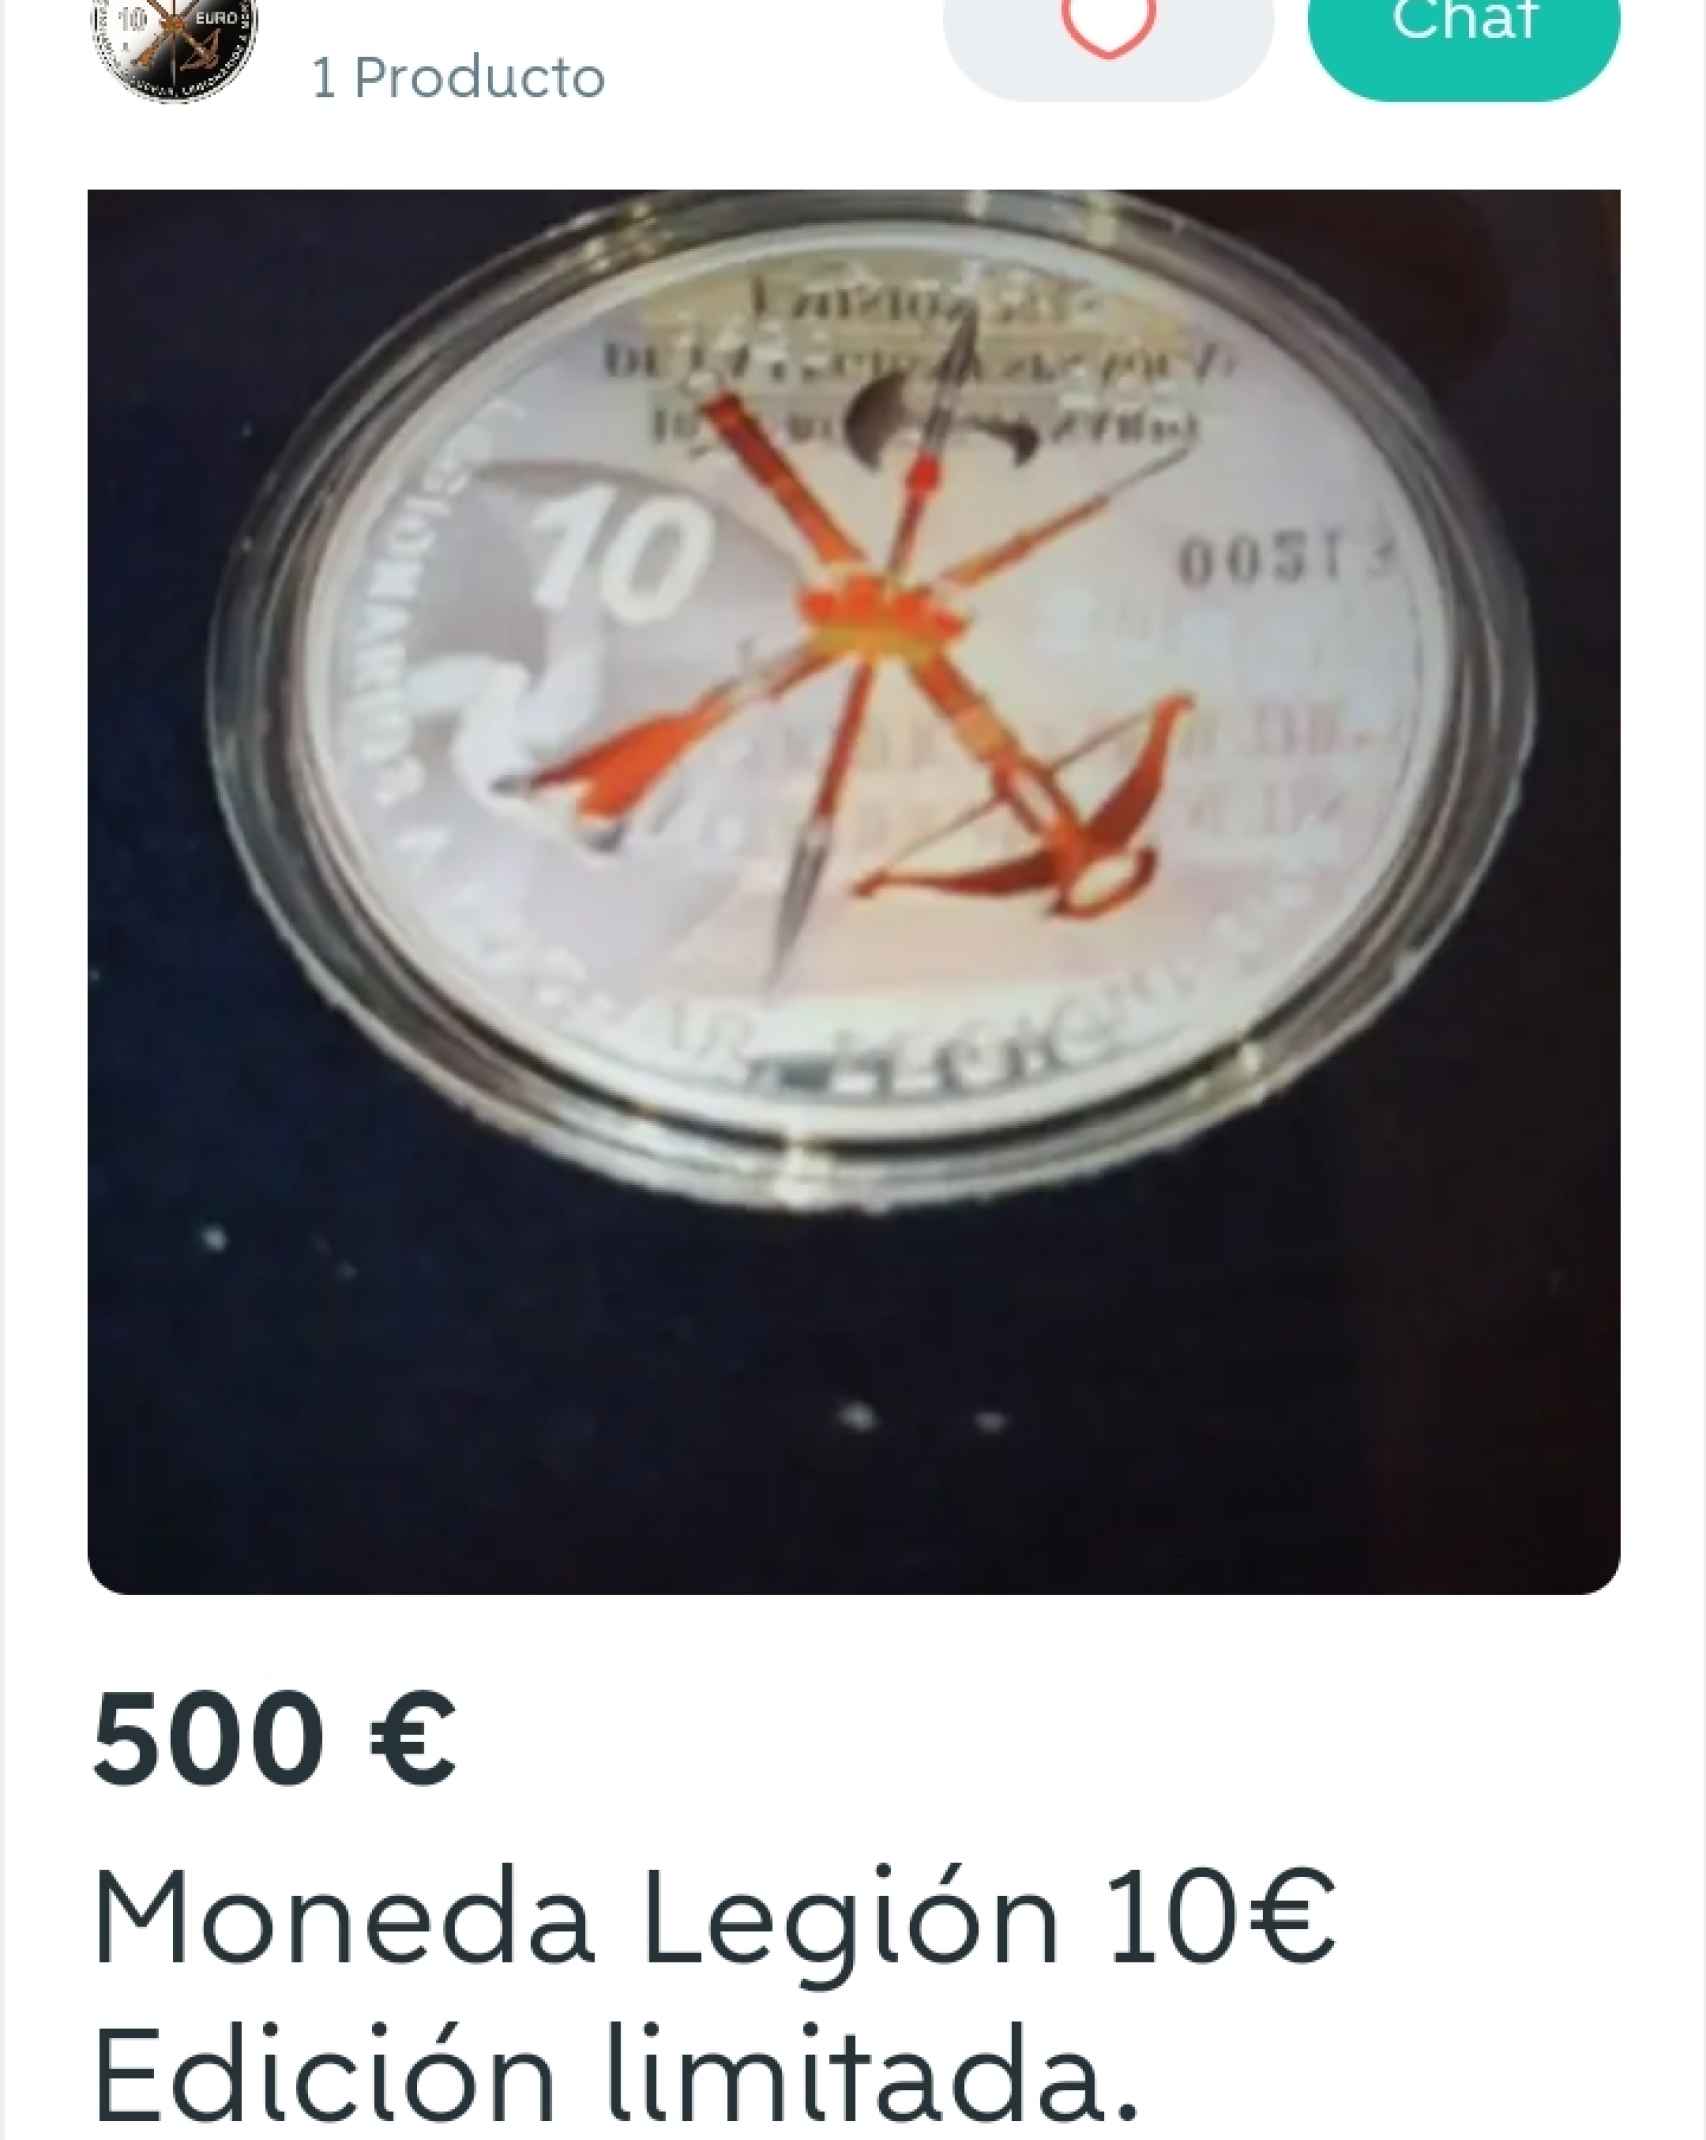 La moneda de la Legión, en Wallapop a 500 euros.